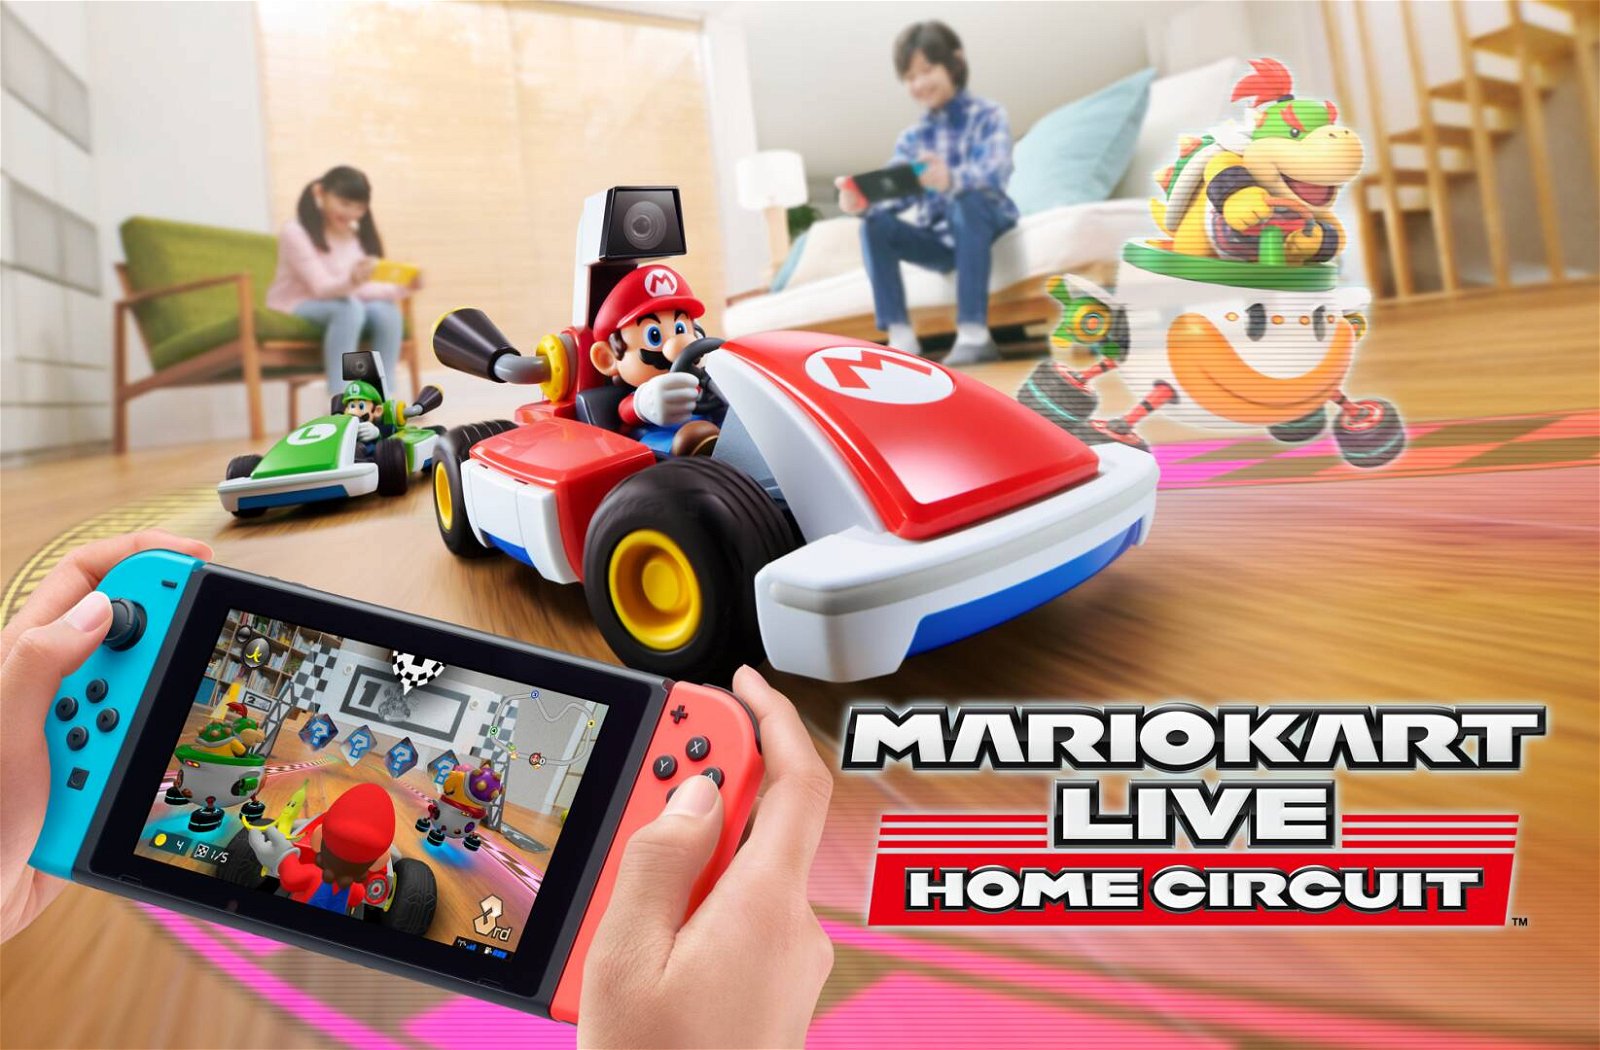 Mario Kart Live Home, rivenditori svelano anche il prezzo